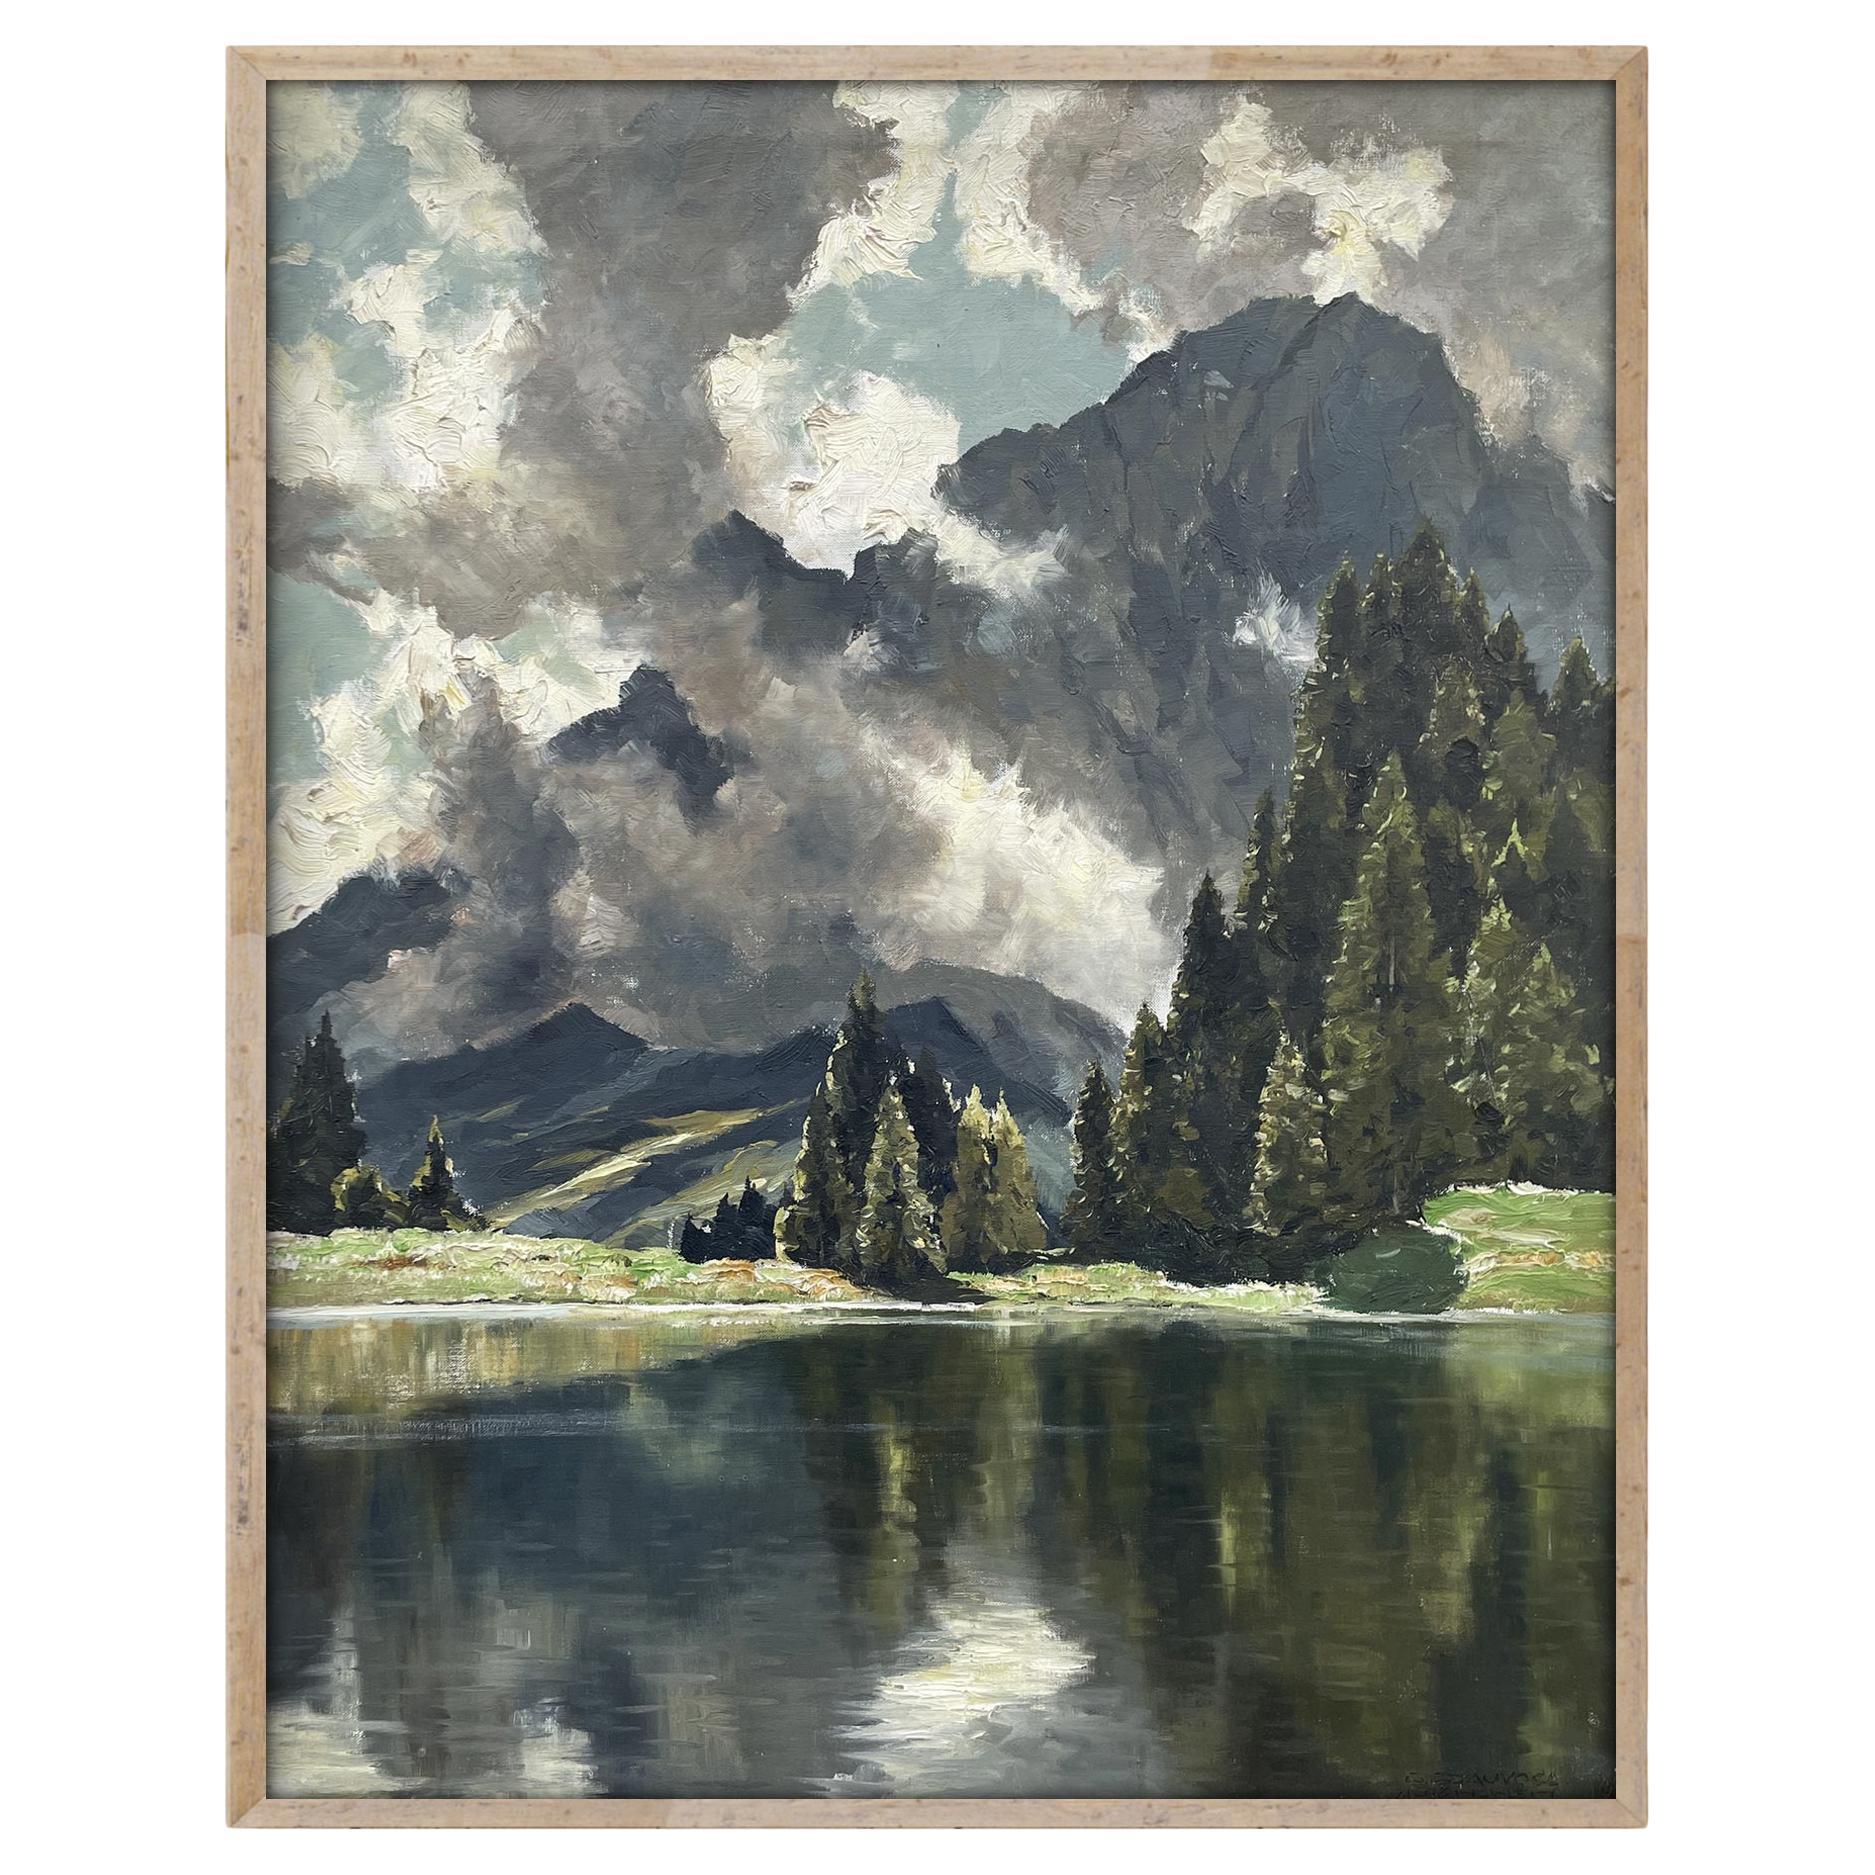 View of Lake Limides, Italienische Dolomiten, Öl auf Leinwand von Georg Grauvogl 